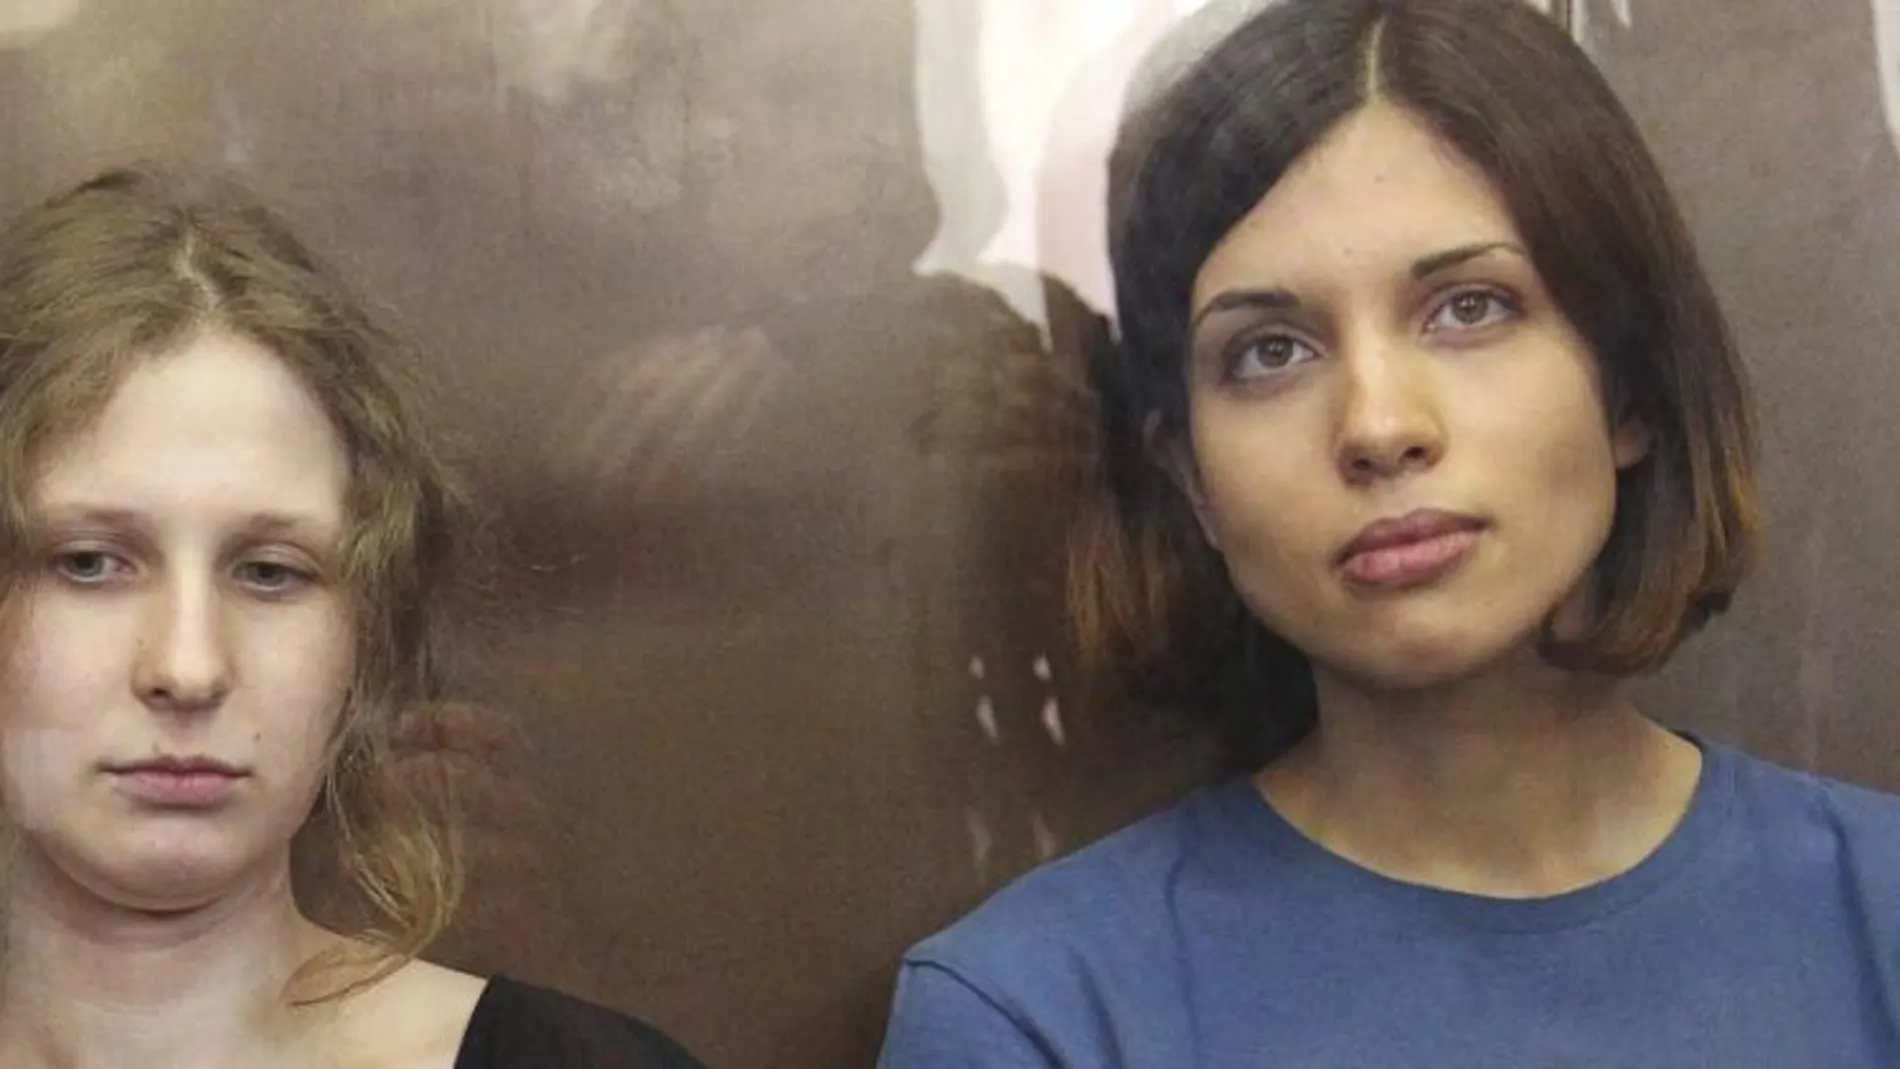 Foto de archivo de las componentes del grupo de punk ruso Pussy Riot Maria Alyokhina (izq) y Nadezhda Tolokonnikova (dcha), durante una sesión de su juicio en Moscú (Rusia).